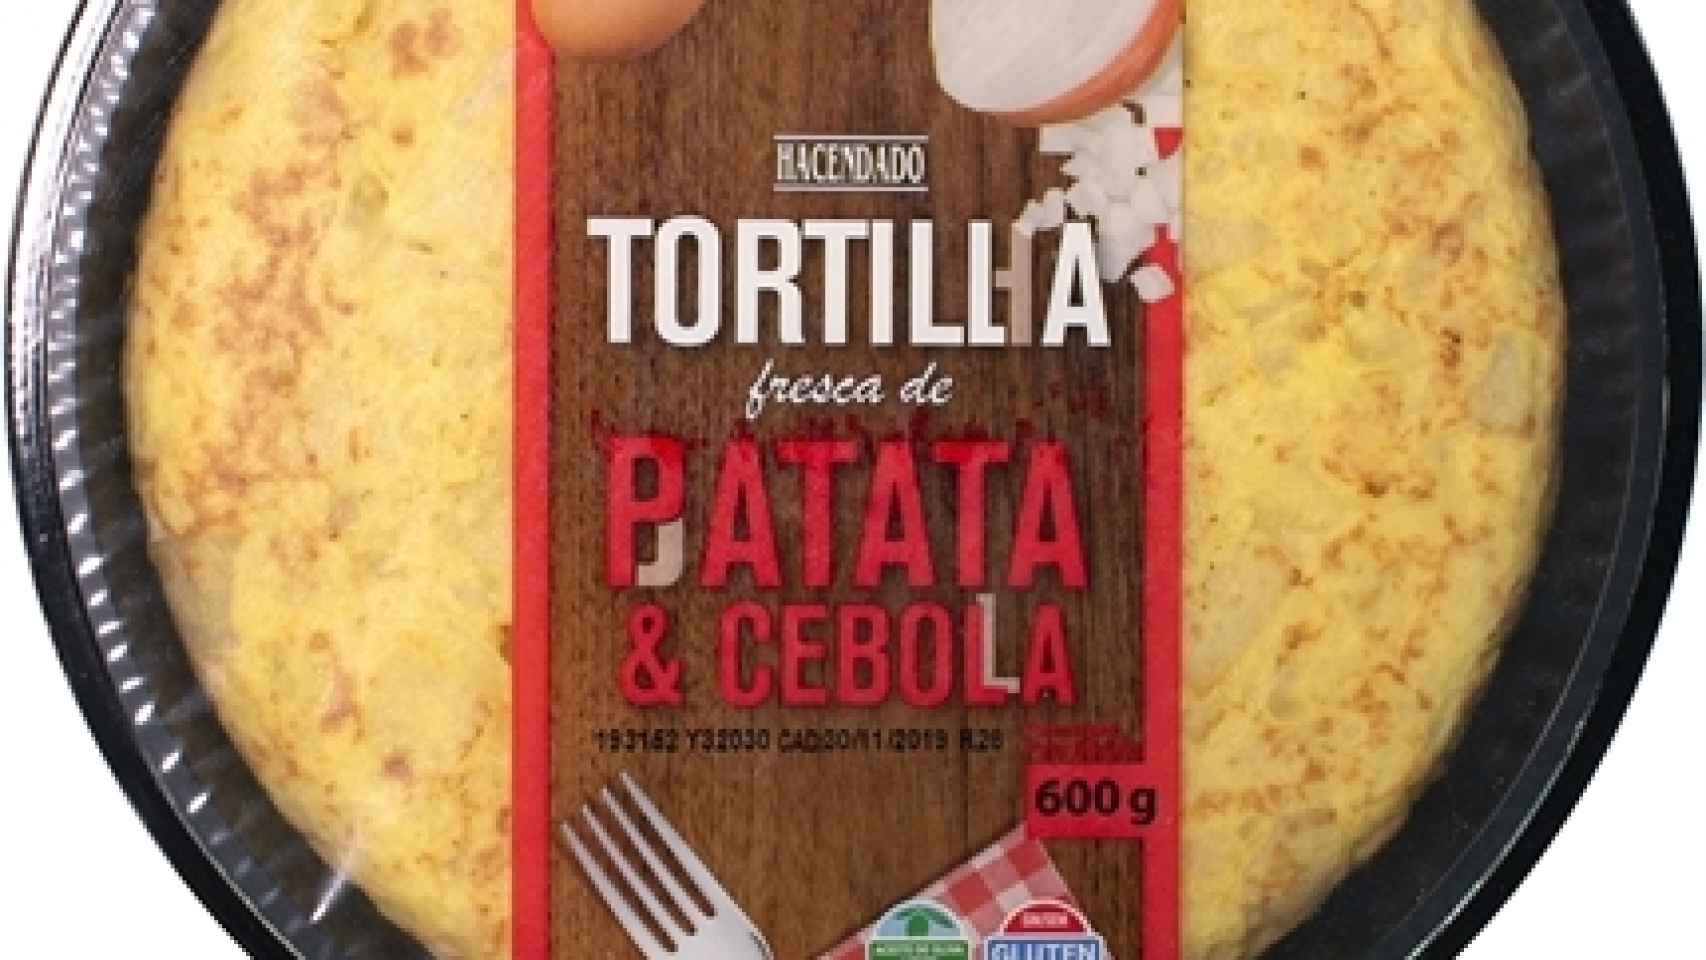 La tortilla con cebolla que comercializa Mercadona.